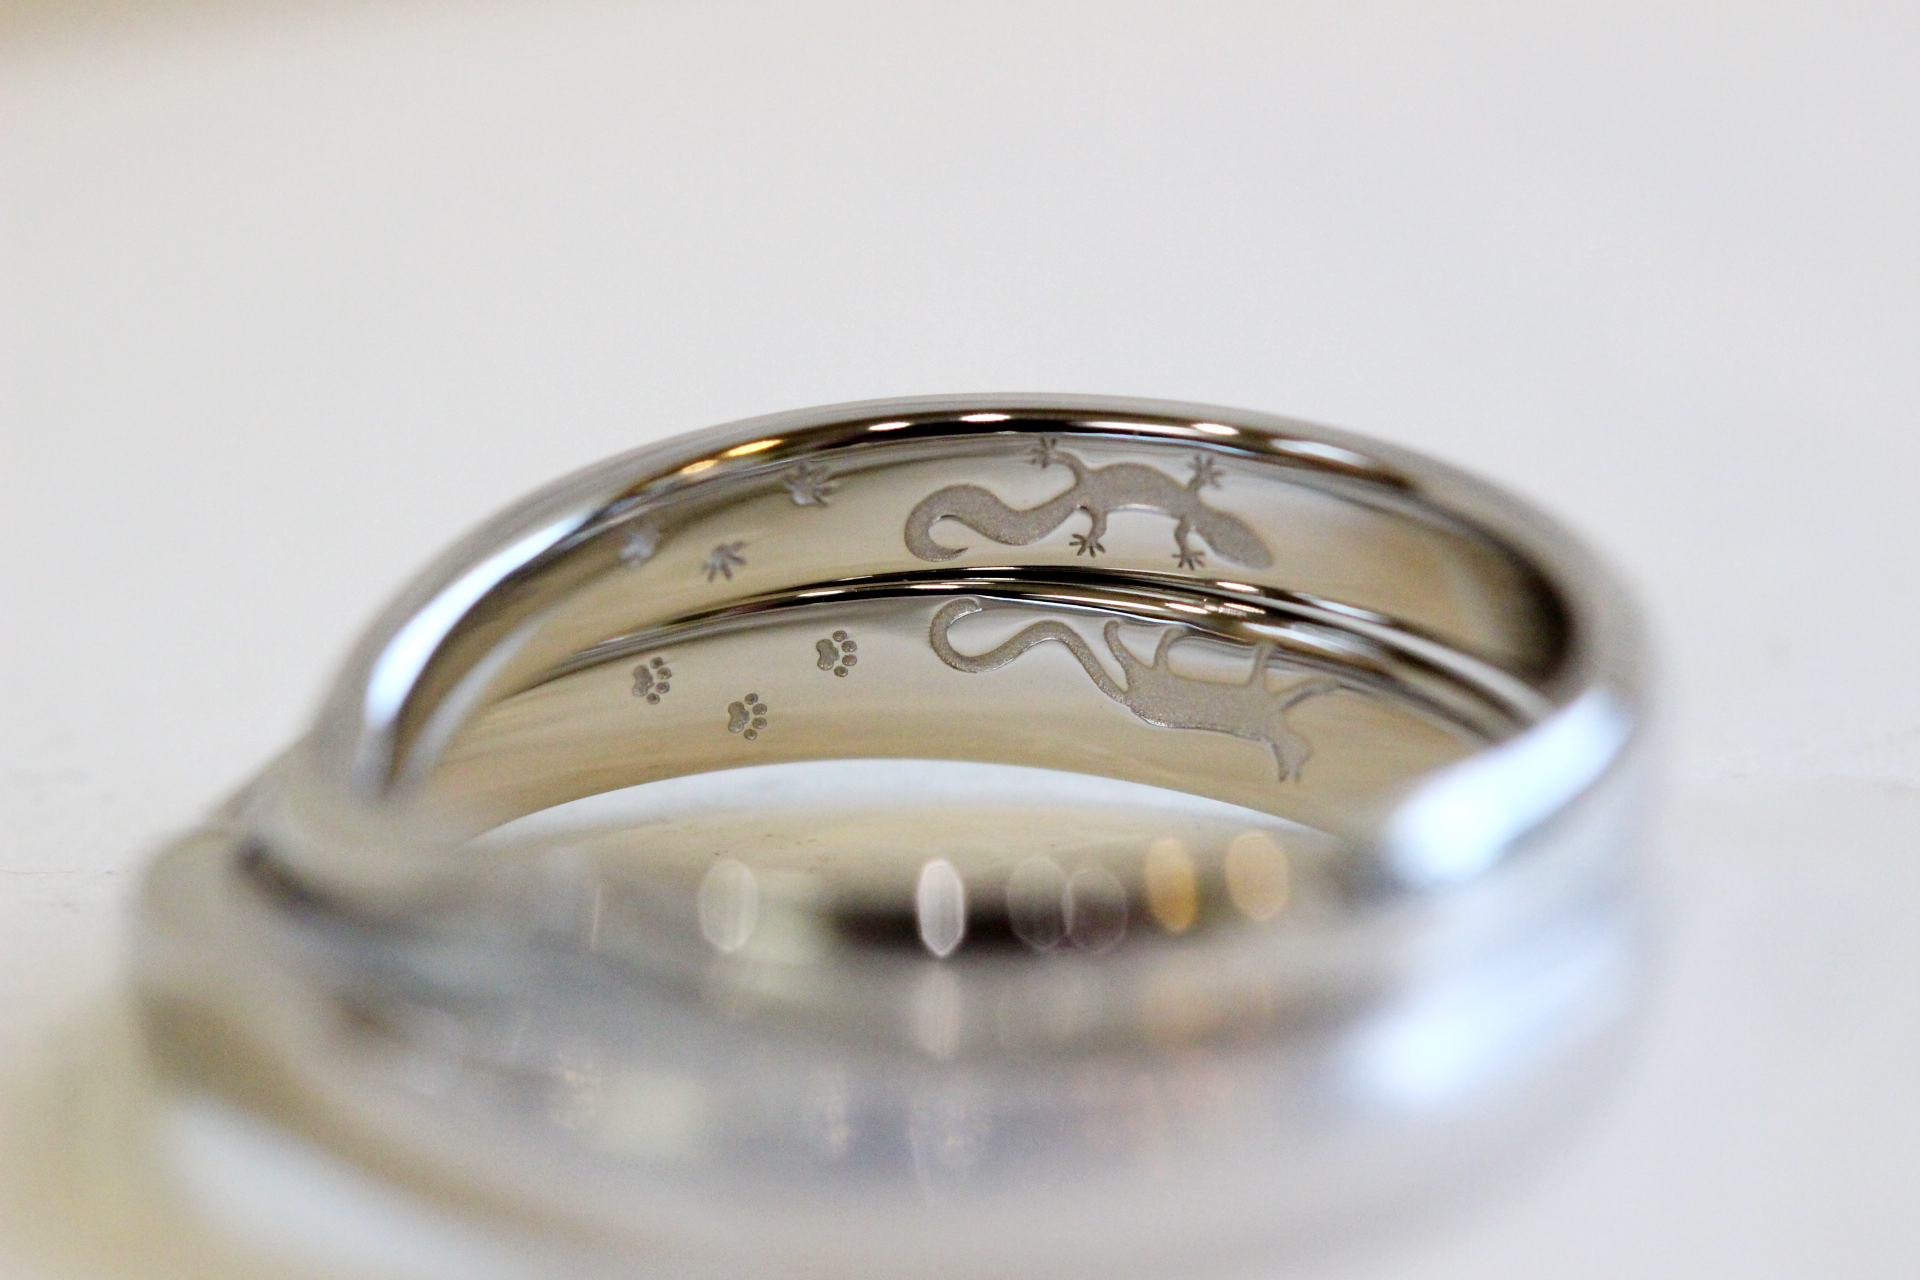 ヒョウモントカゲモドキと猫の刻印マリッジリング(お客様オーダーメイド結婚指輪)